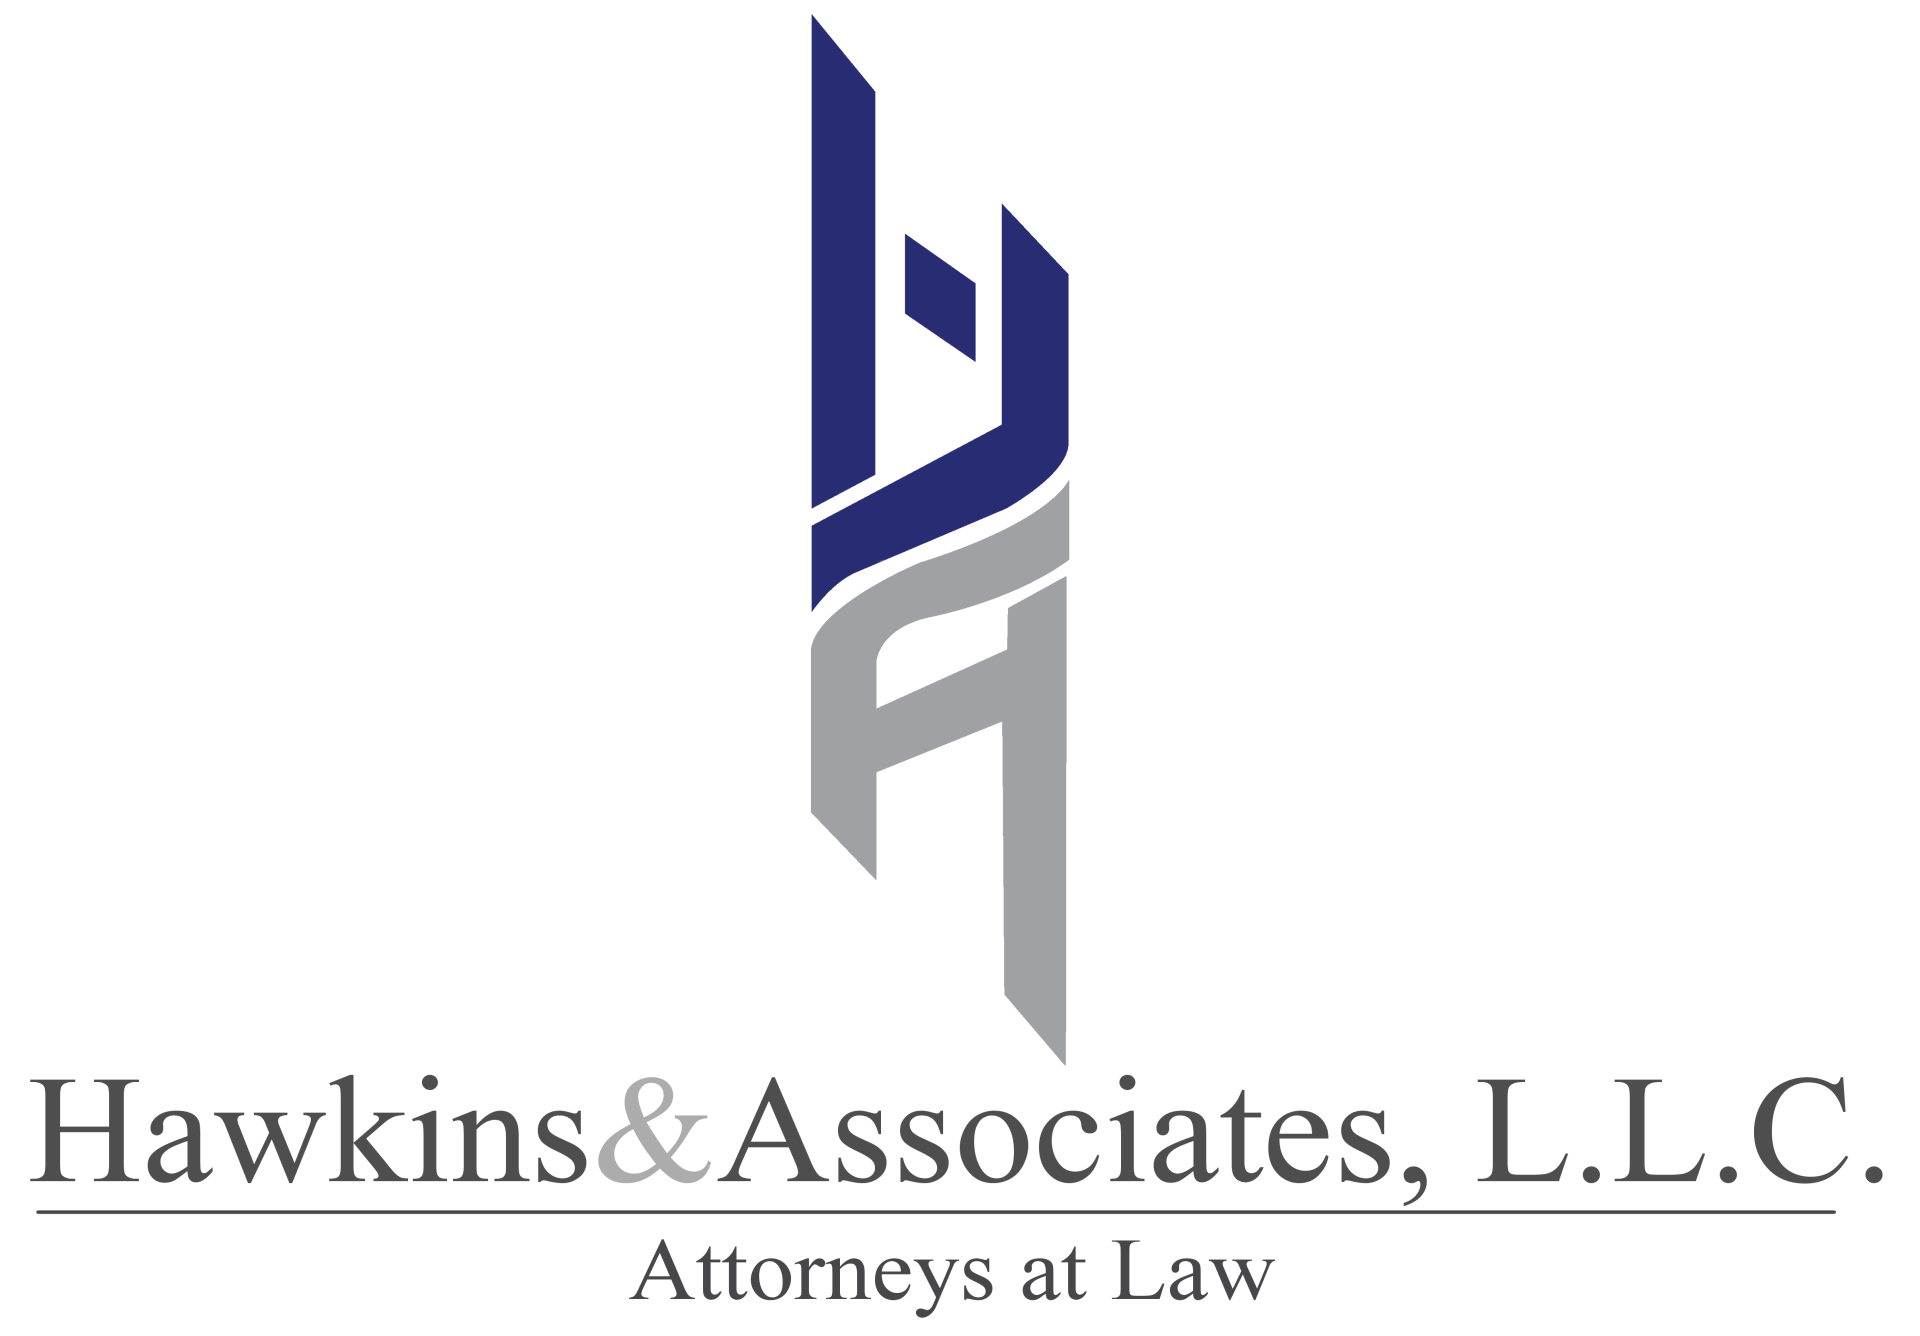 Hawkins & Associates, L.L.C logo